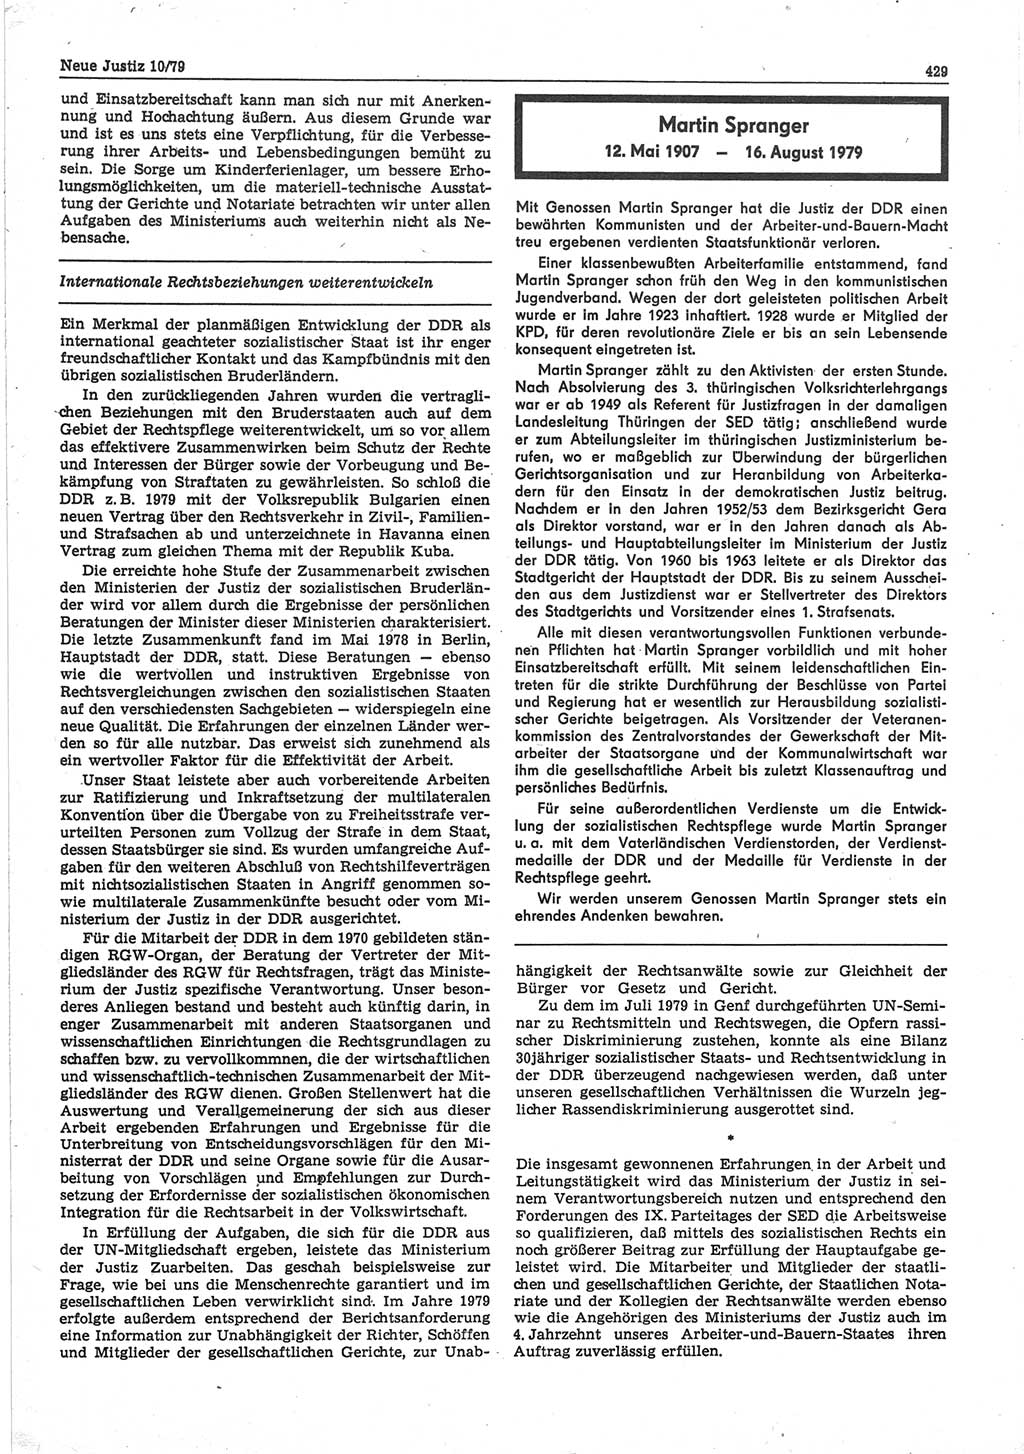 Neue Justiz (NJ), Zeitschrift für sozialistisches Recht und Gesetzlichkeit [Deutsche Demokratische Republik (DDR)], 33. Jahrgang 1979, Seite 429 (NJ DDR 1979, S. 429)